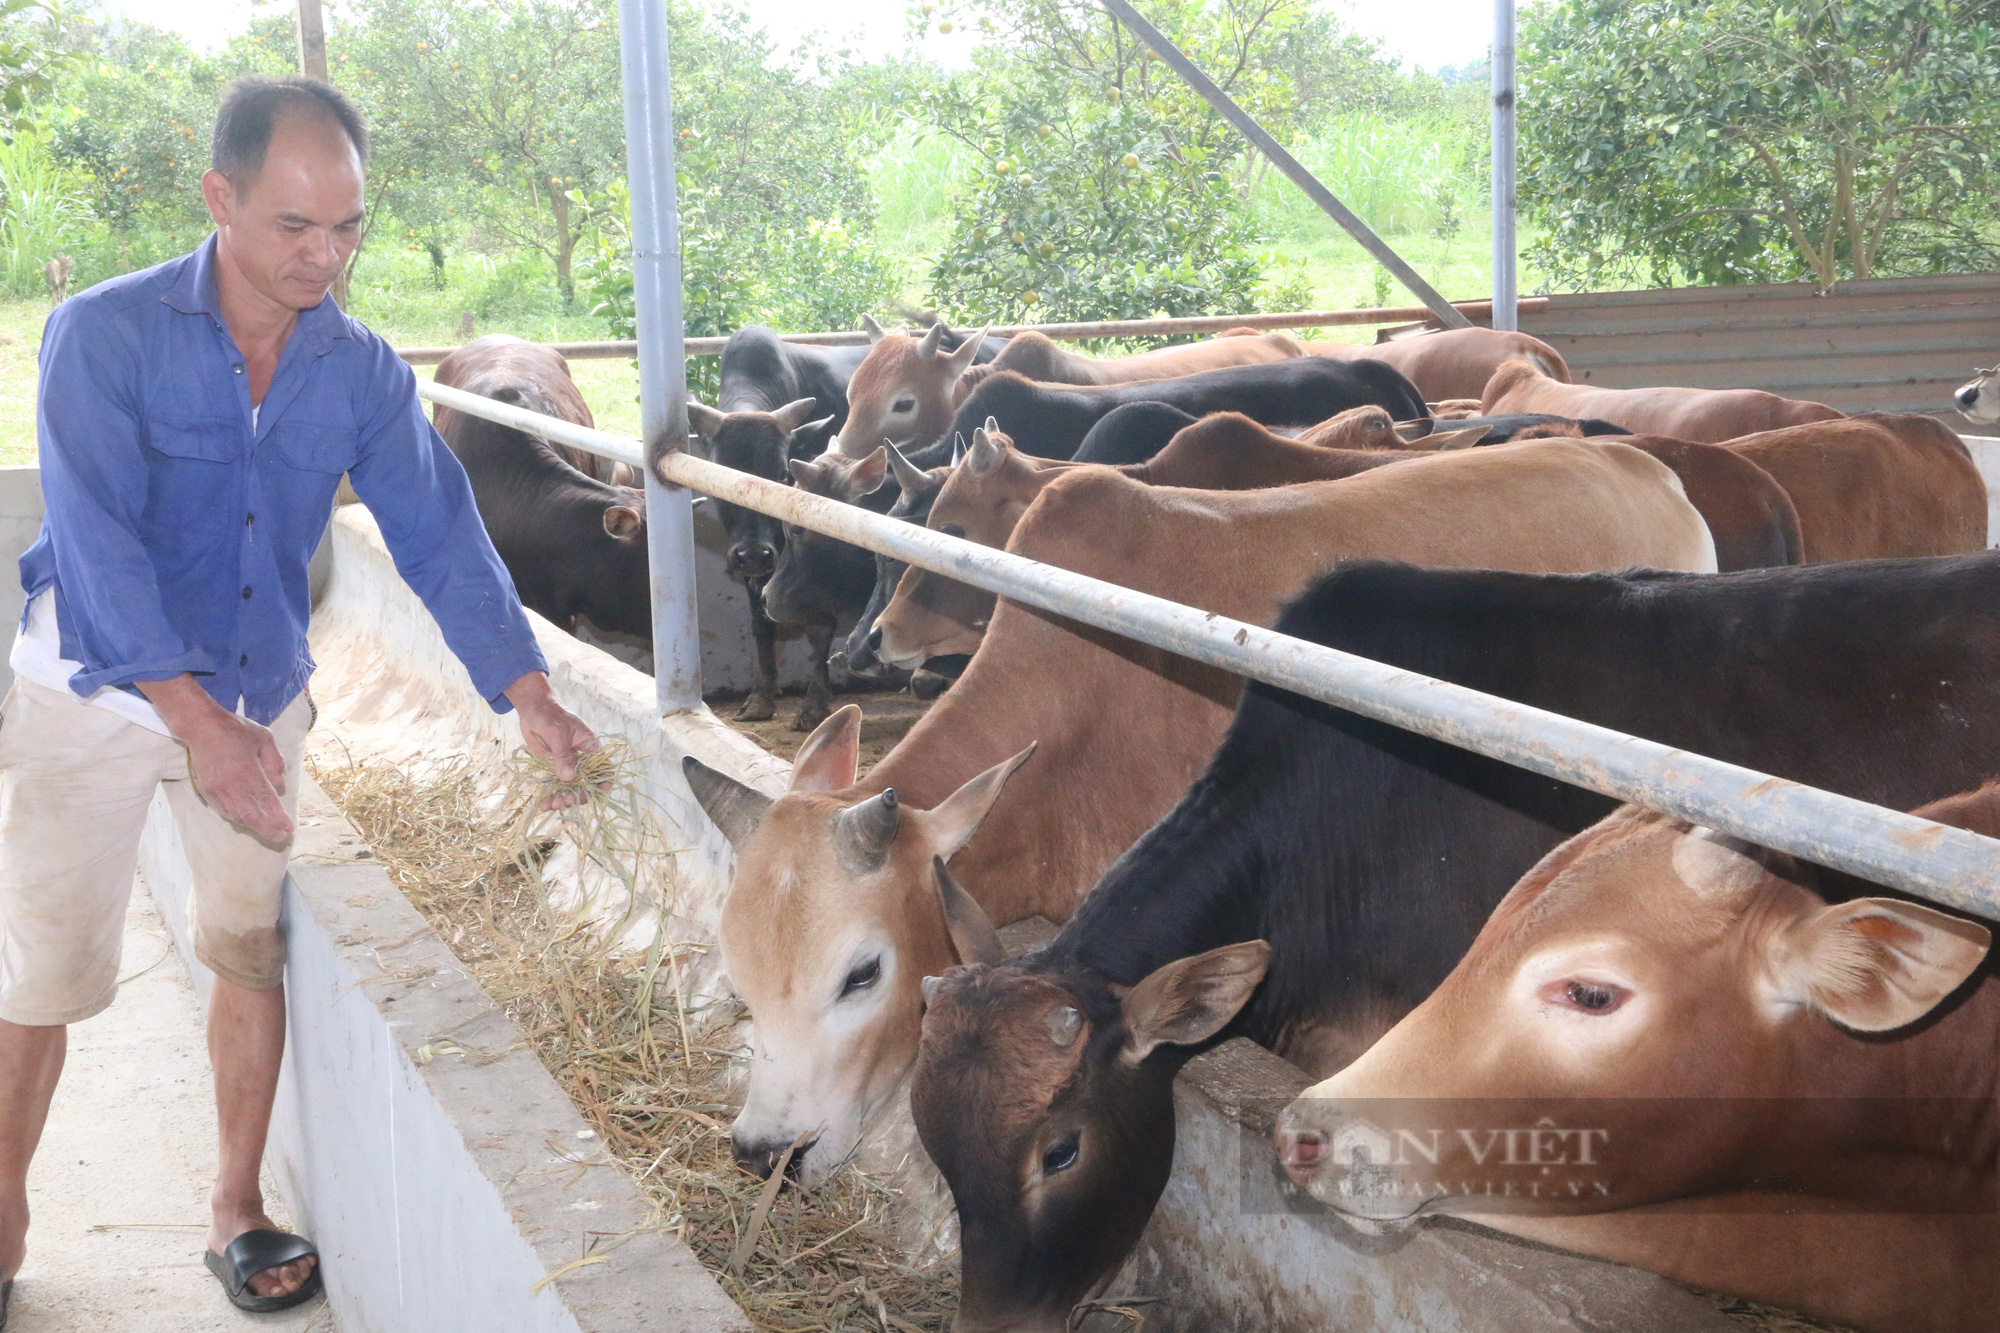 Chỉ nuôi bò vỗ béo bán Tết, lão nông dân xứ Mường kiếm tiền khủng - Ảnh 2.